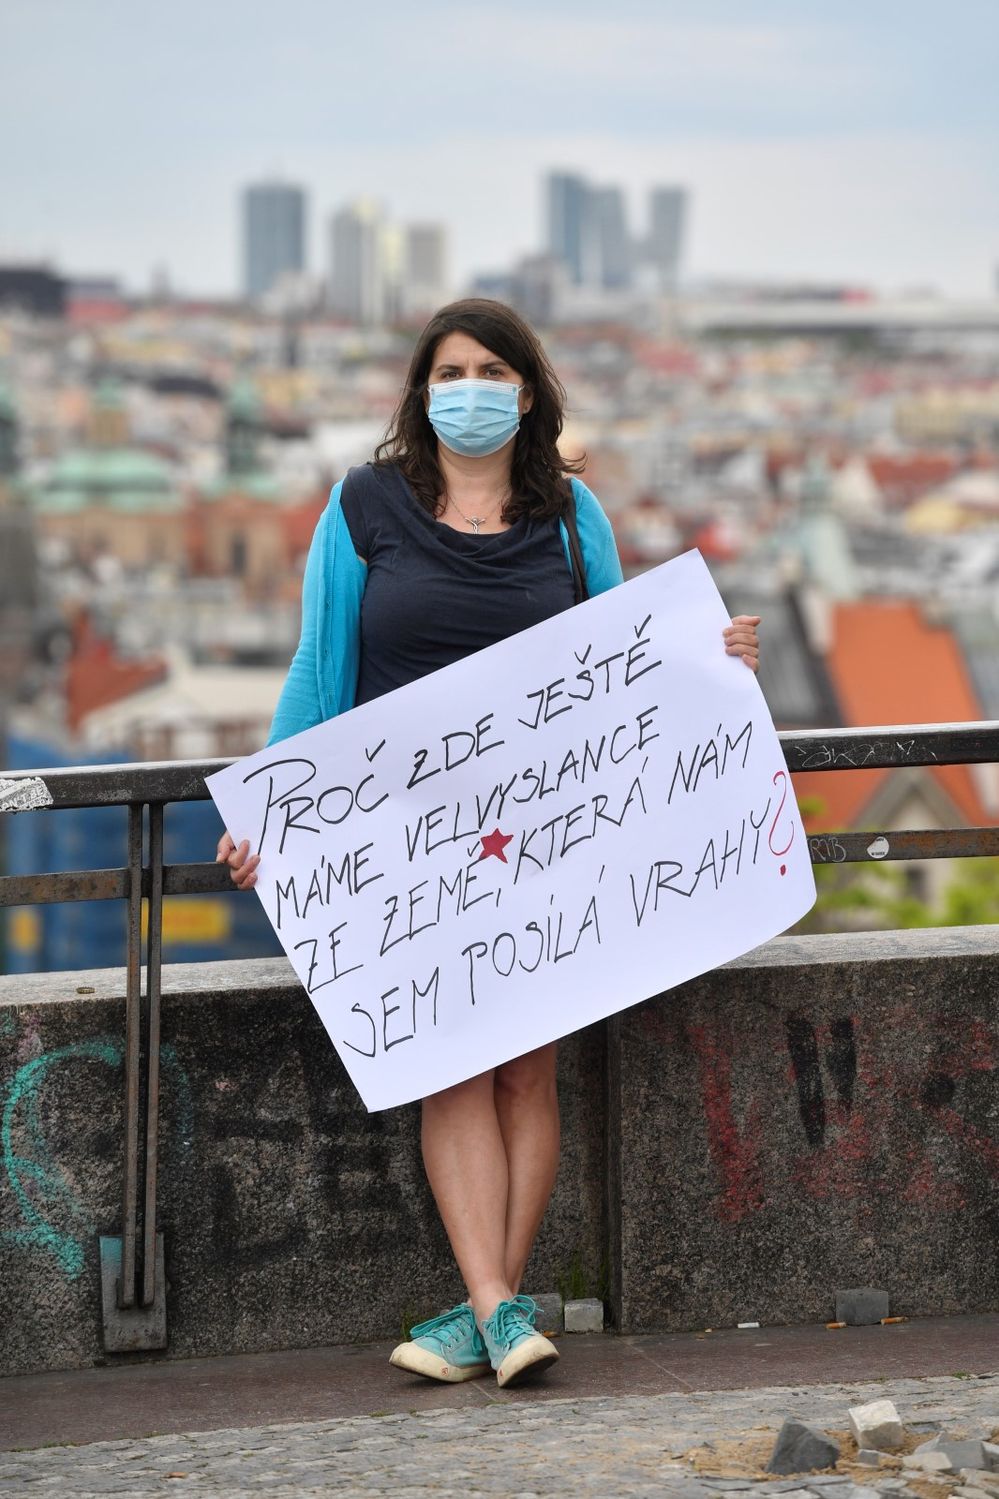 (Duben 2020) V Praze lidé demonstrovali proti vládě. Vyrobili si transparenty a dodržovali dvoumetrové rozestupy.